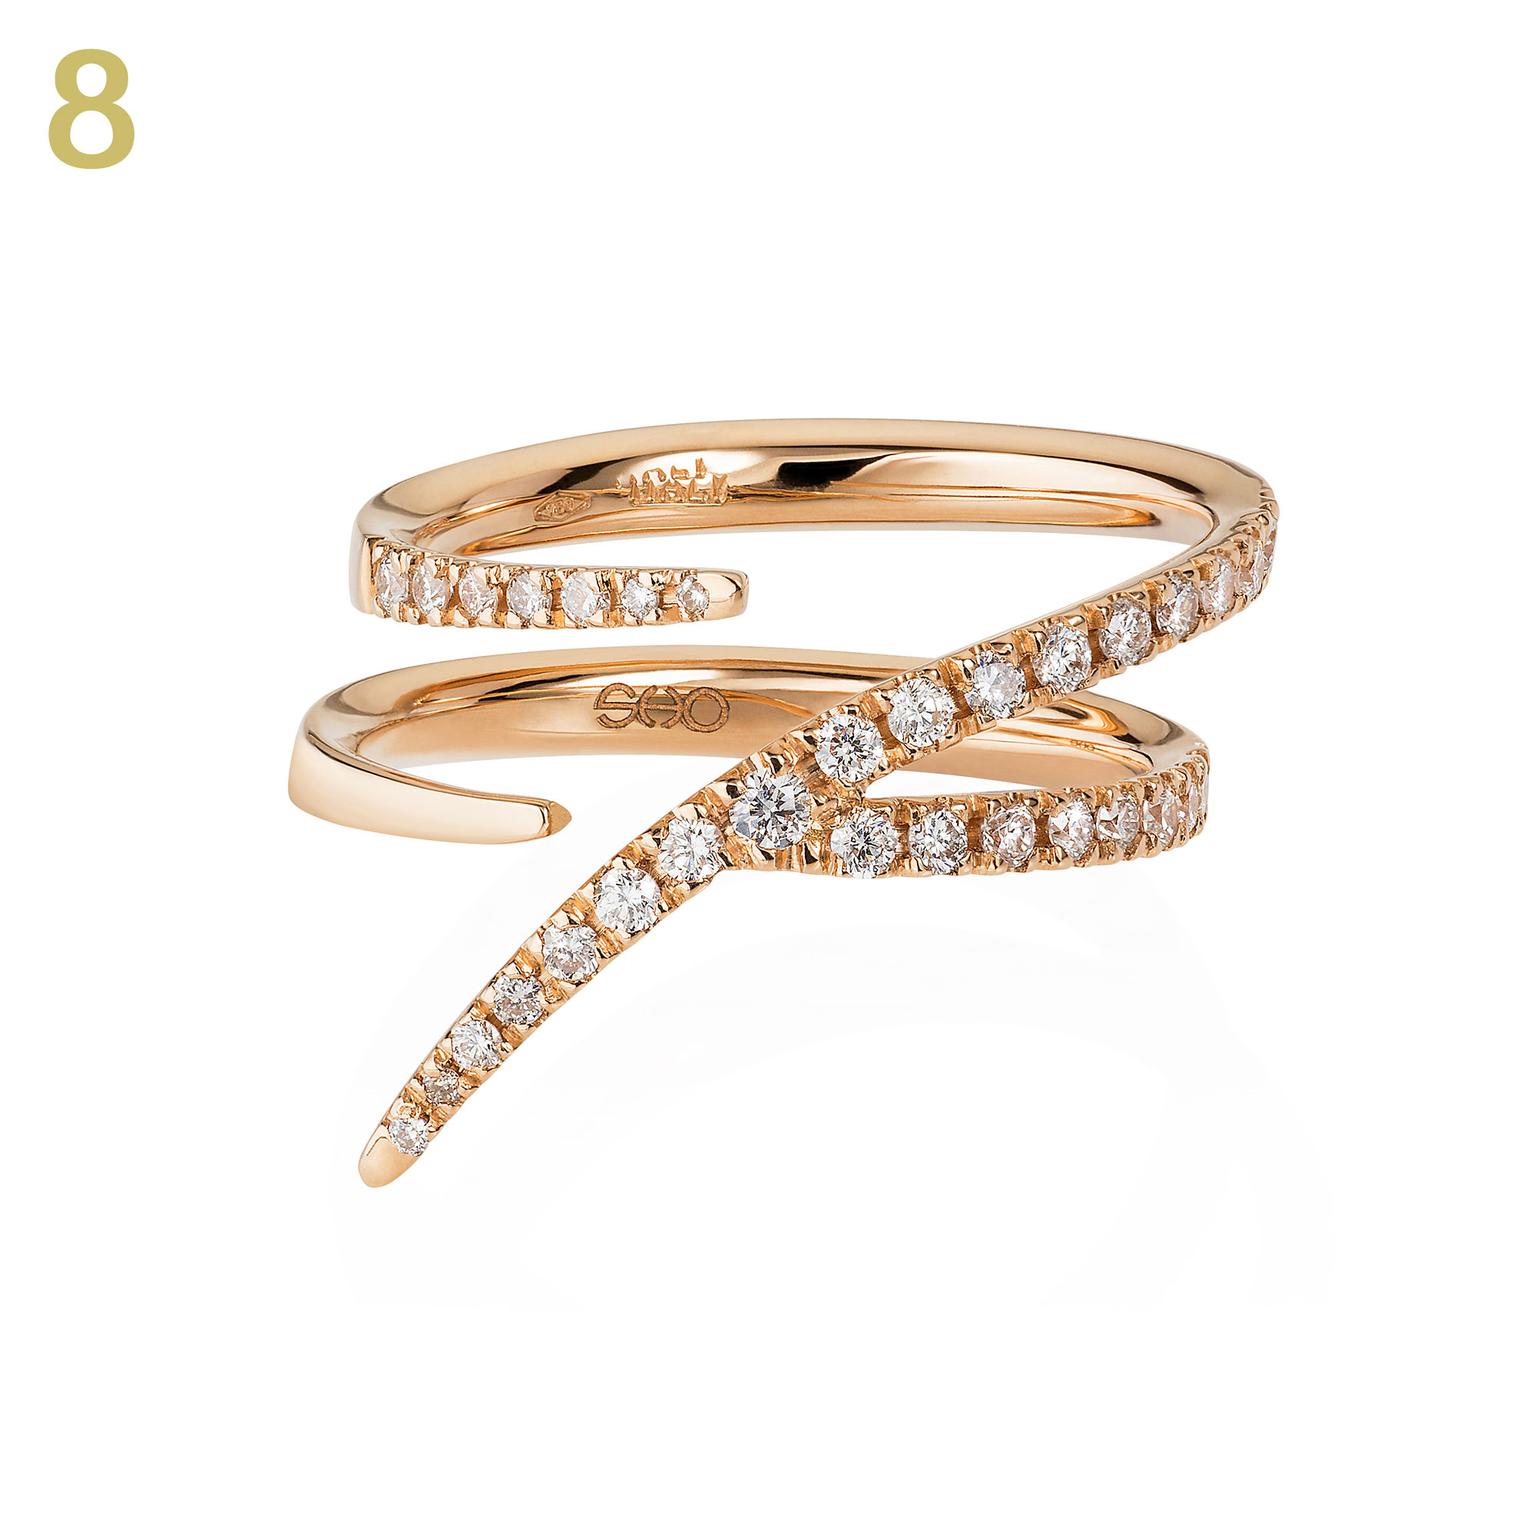 Sarah Ho Numerati gold and diamond ring